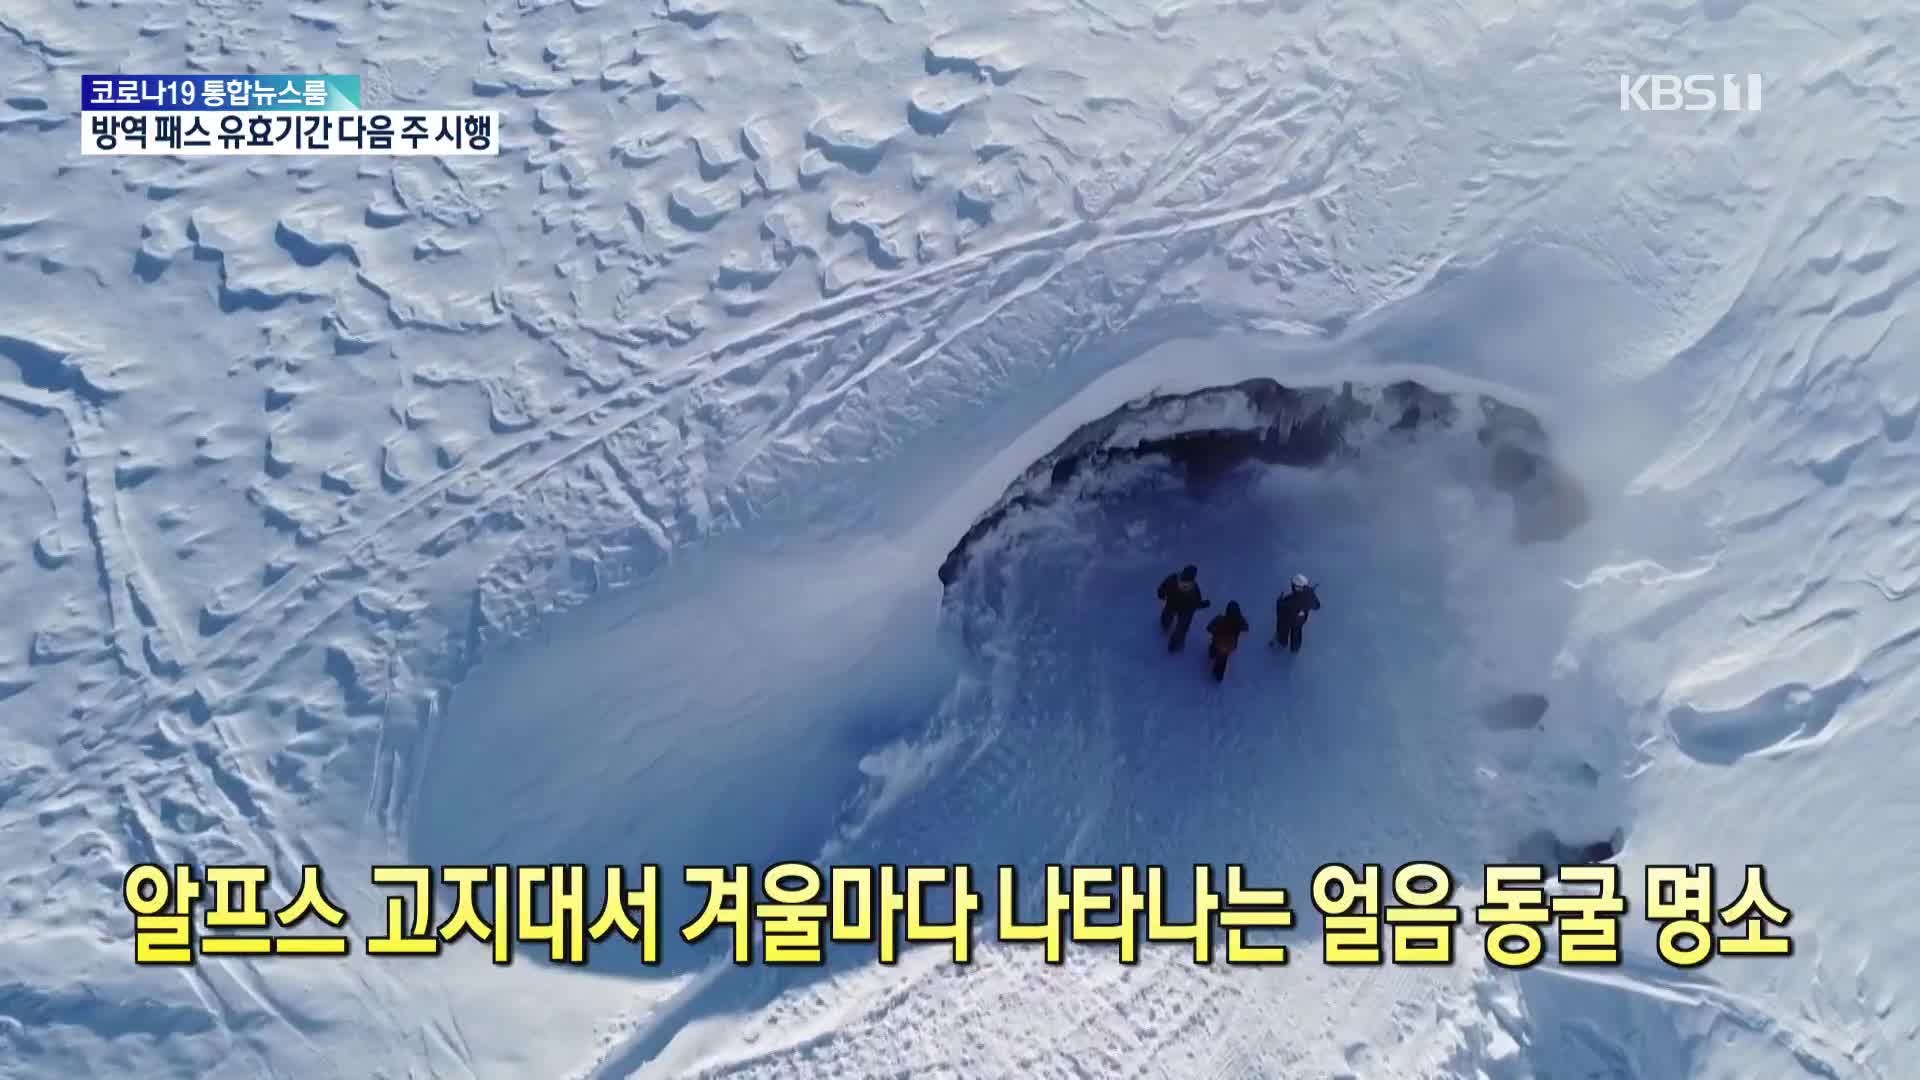 [톡톡 지구촌] 알프스 고지대서 겨울마다 나타나는 얼음 동굴 명소